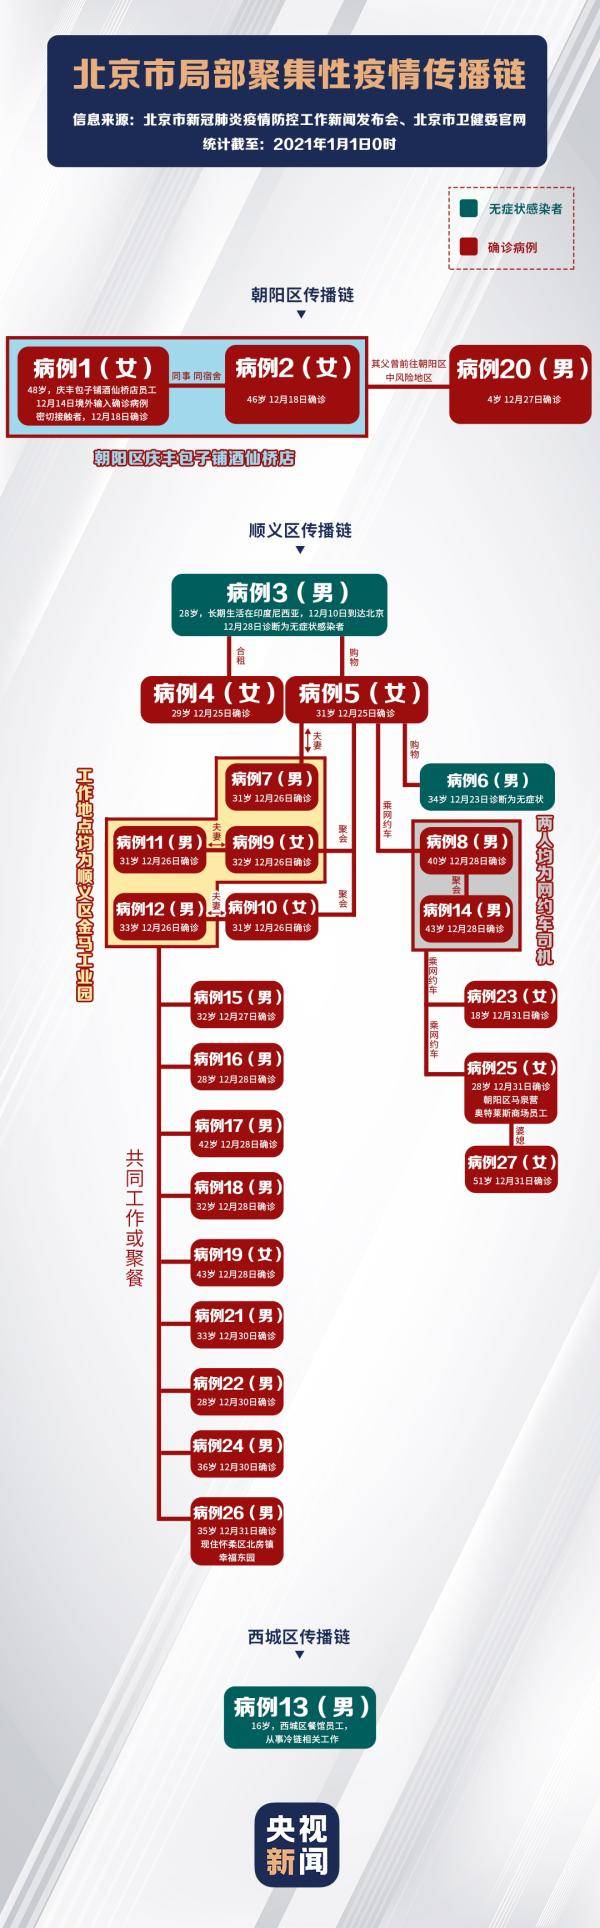 一图看懂 北京市局部疫情传播链